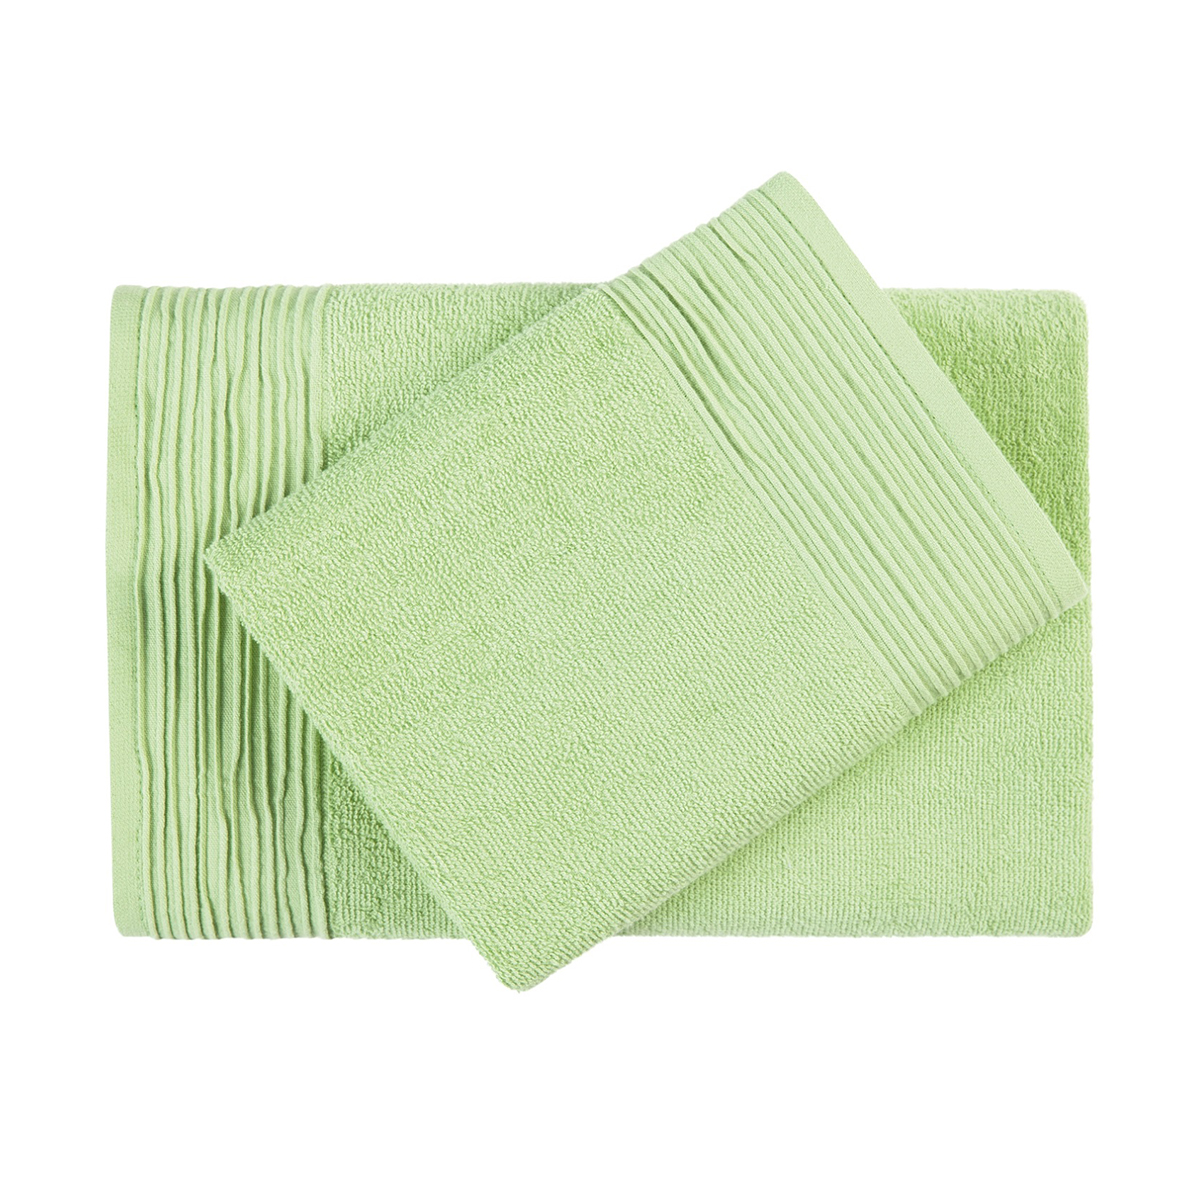 Полотенце "самойловский текстиль" палитра 33*60 см (светло-зеленый)